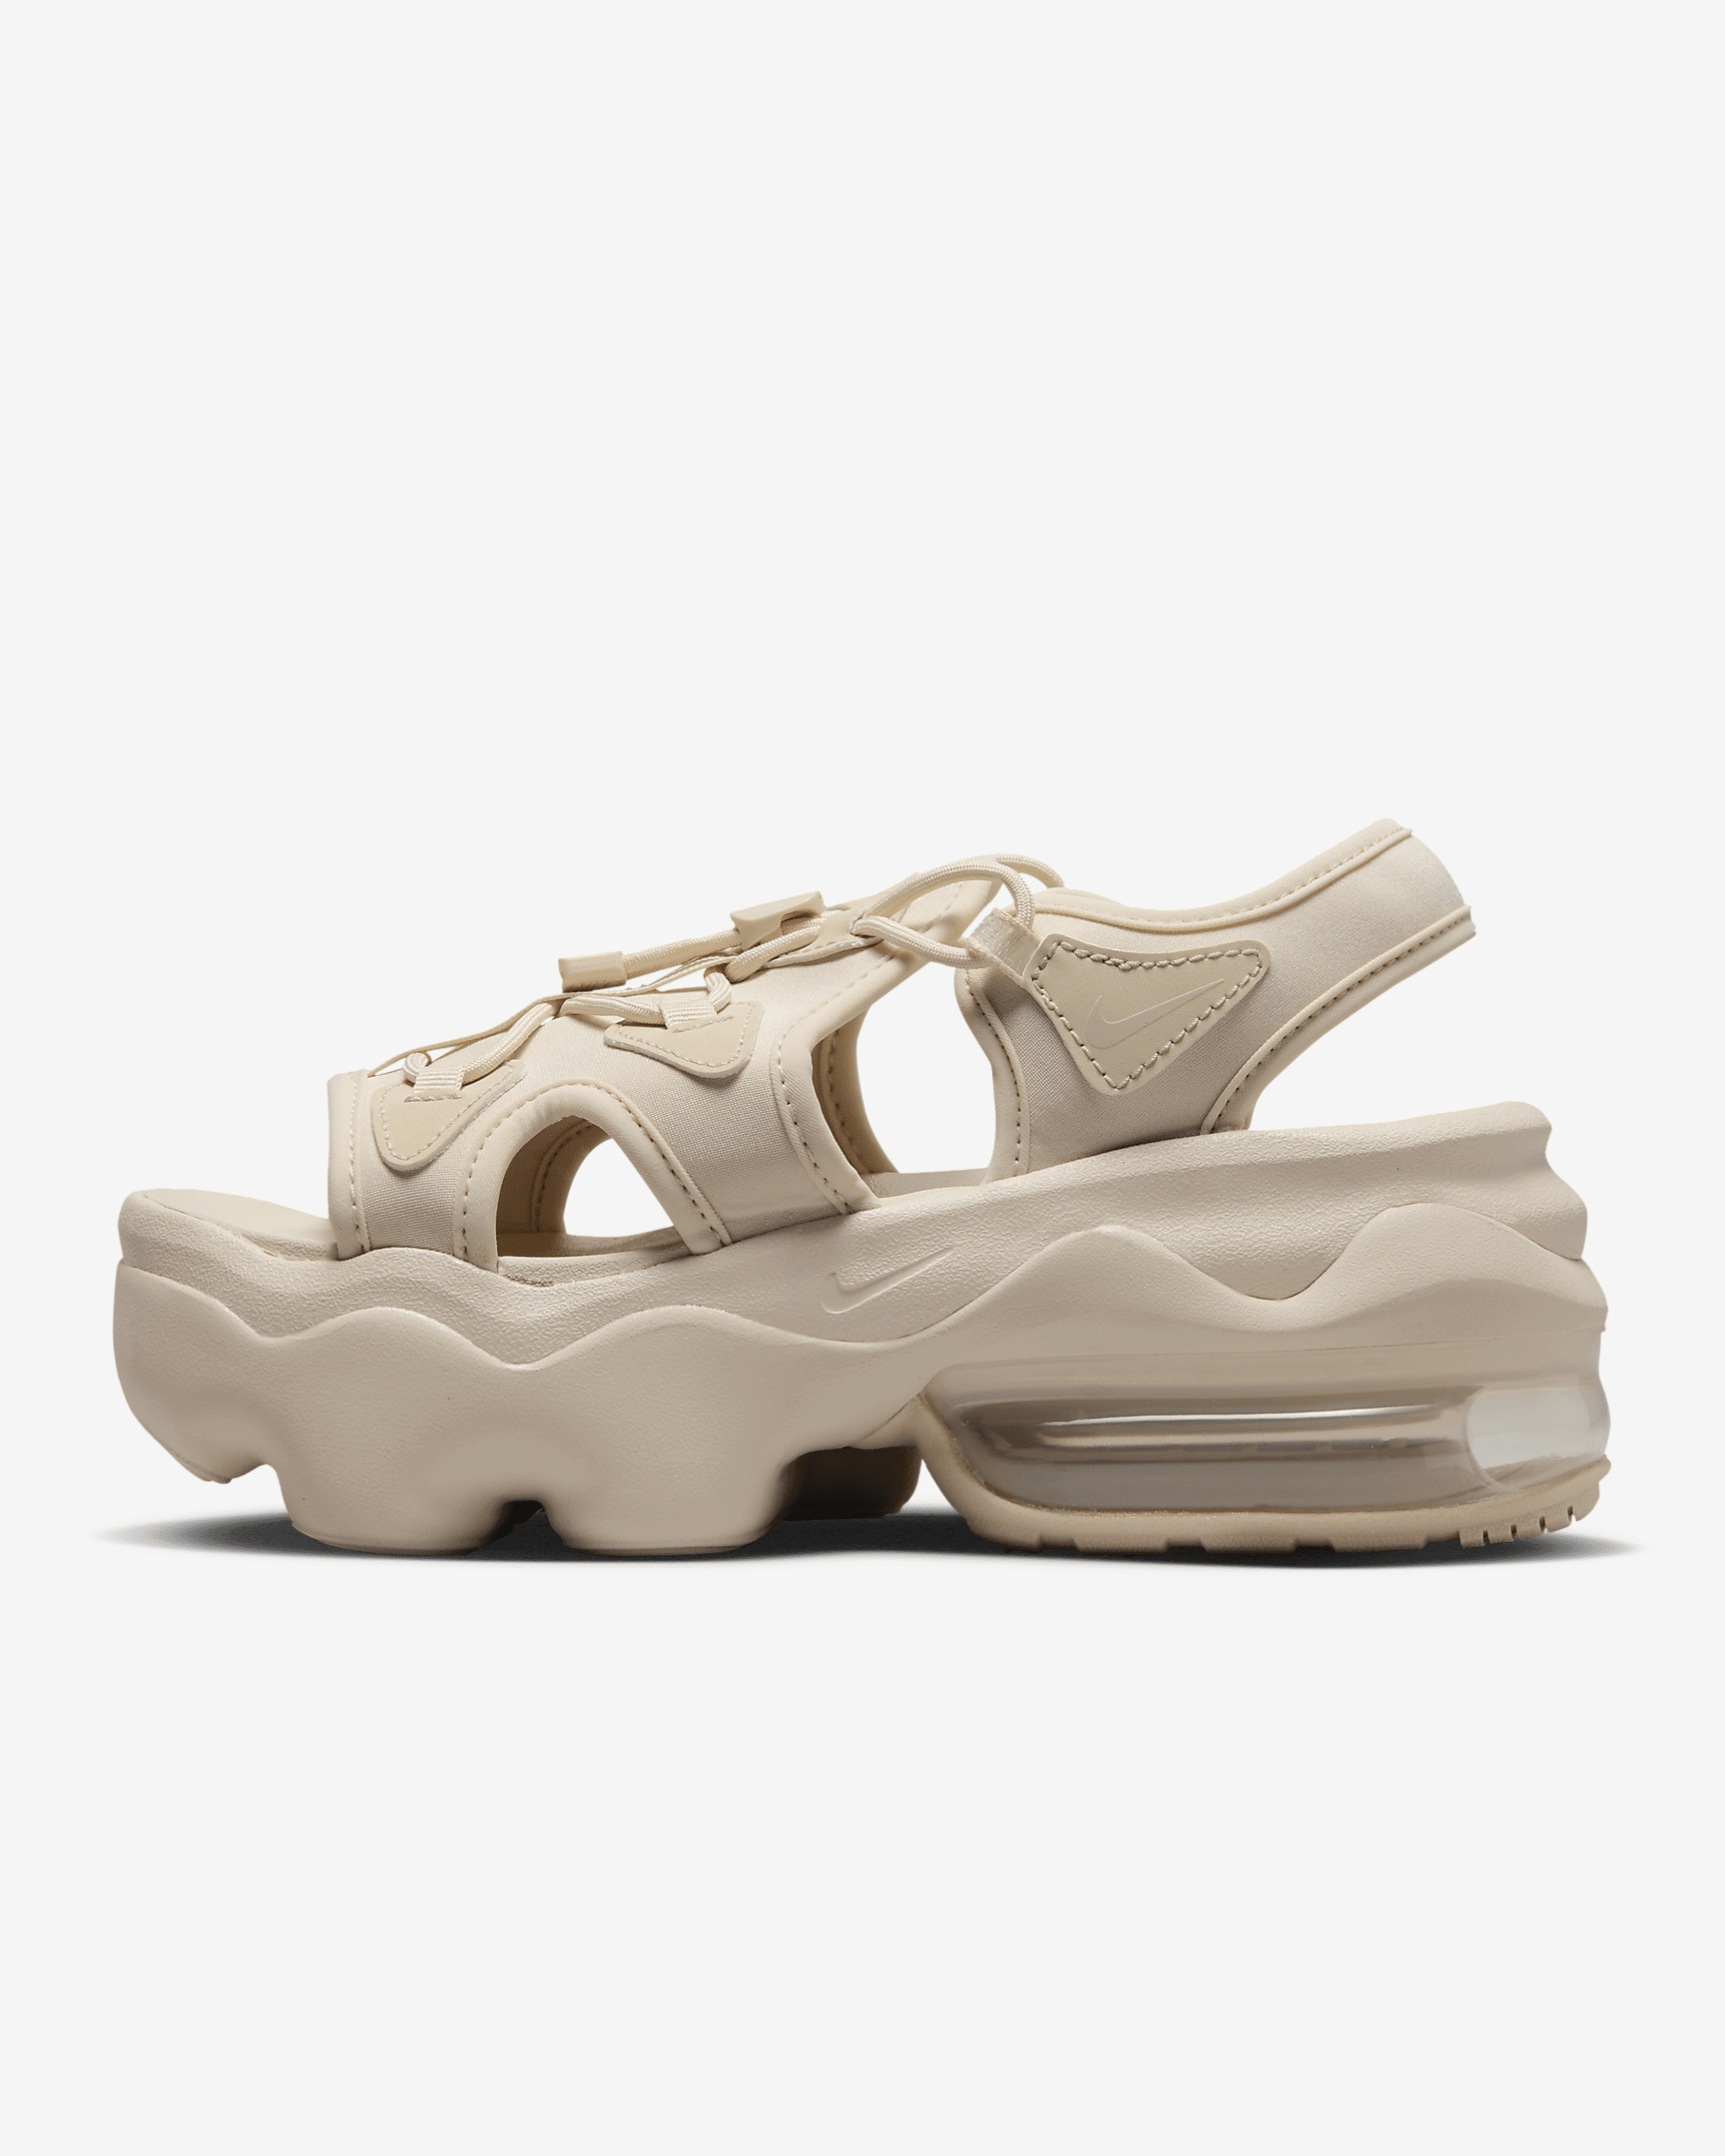 Nike Women's Air Max Koko Sandals - 1